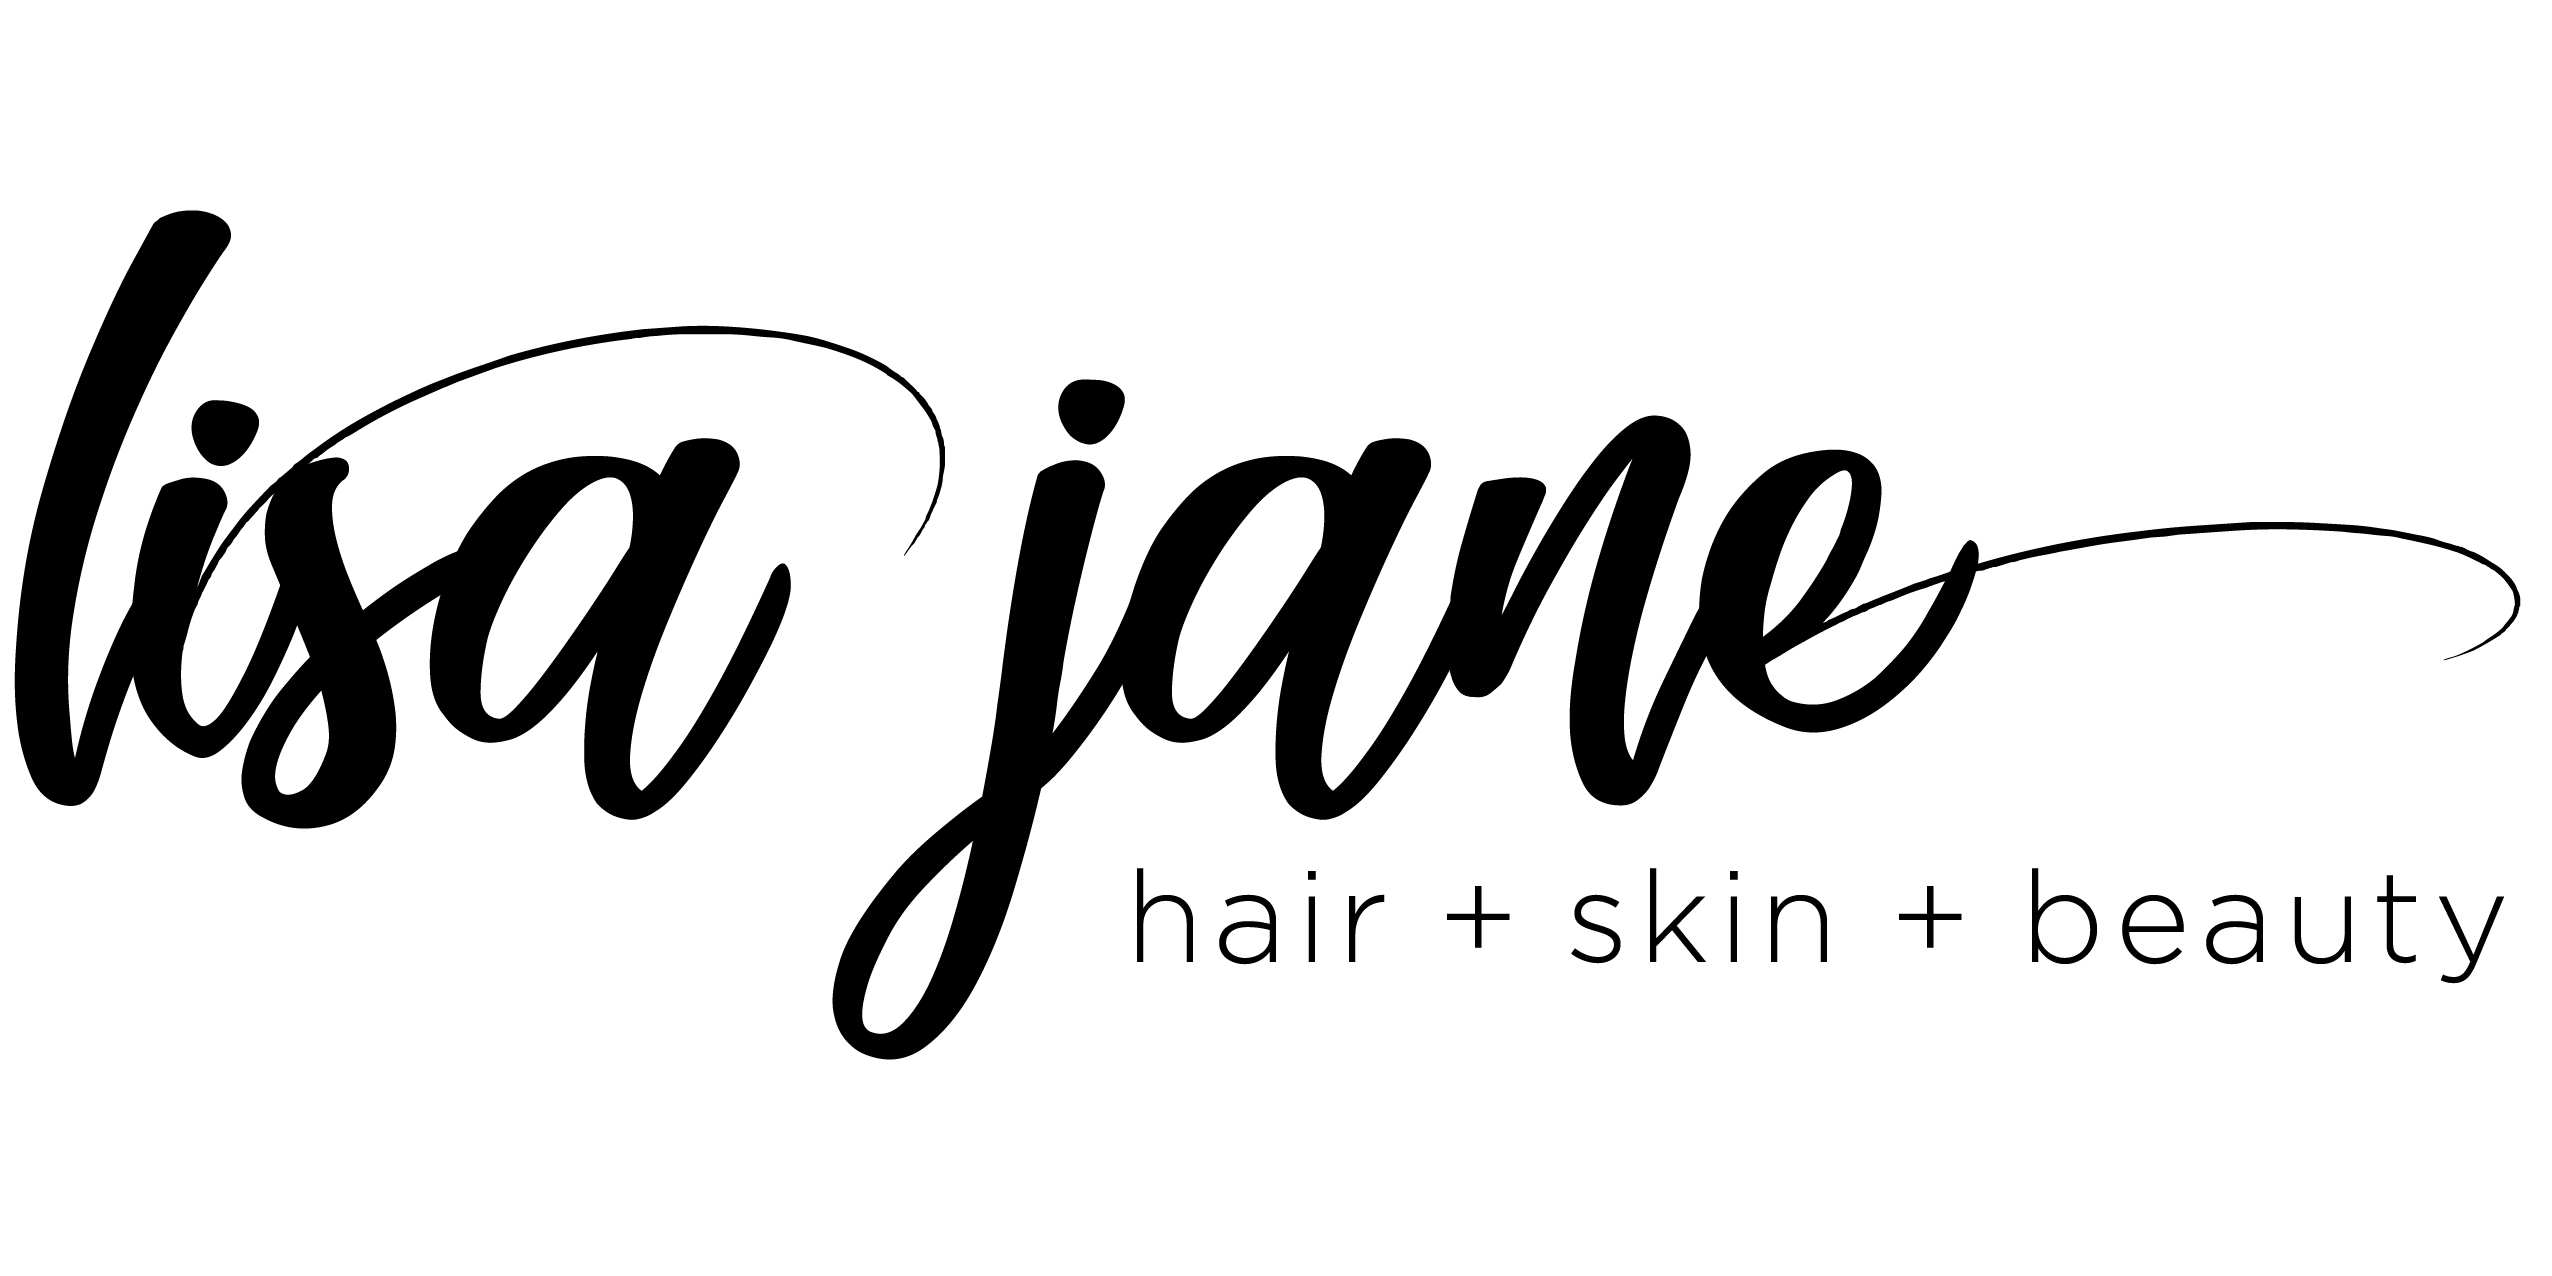 Lisa Jane Skin + Beauty + Hair